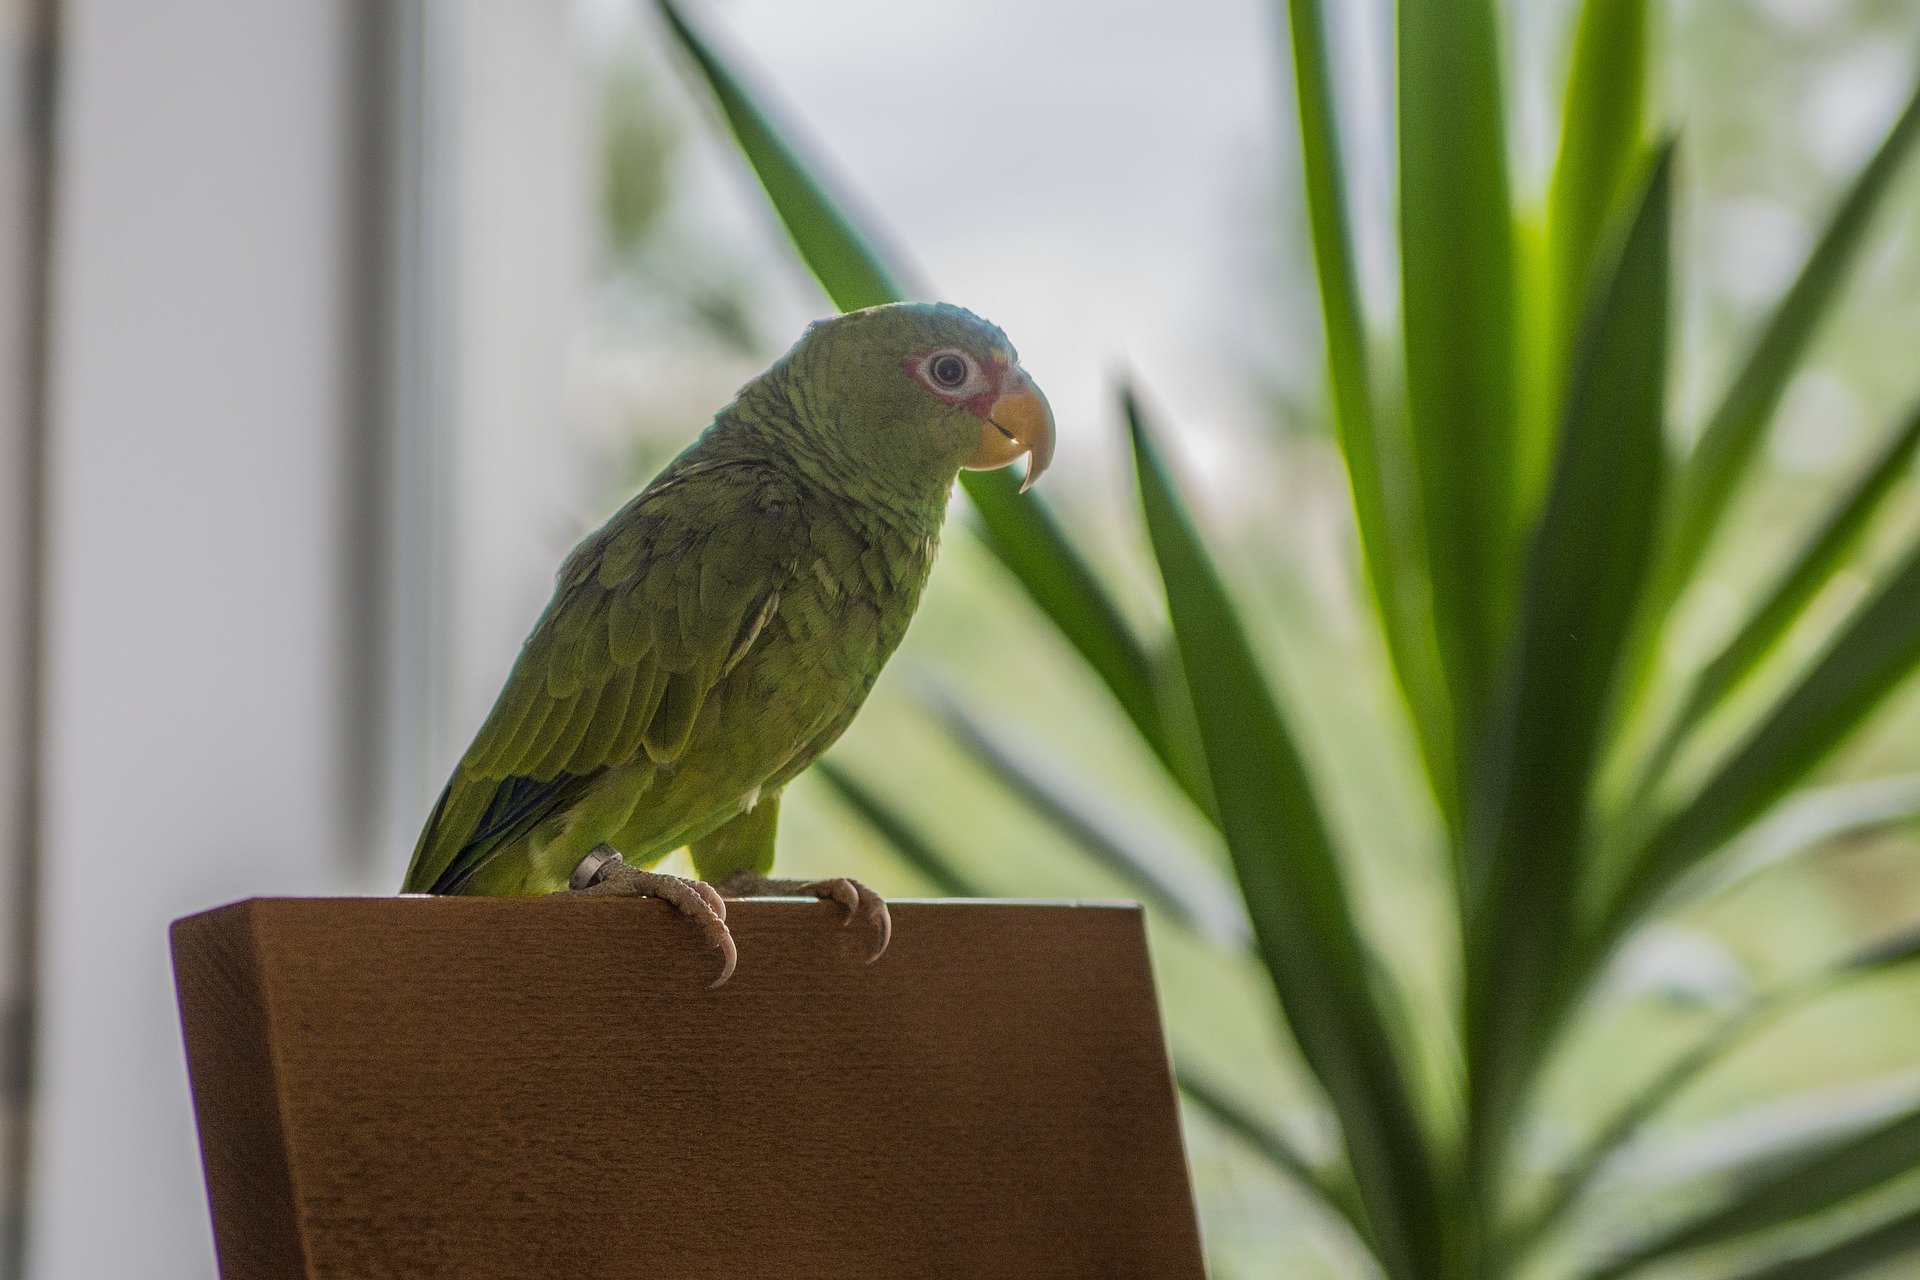 ahşap sandalye sırtında duran yeşil papağan